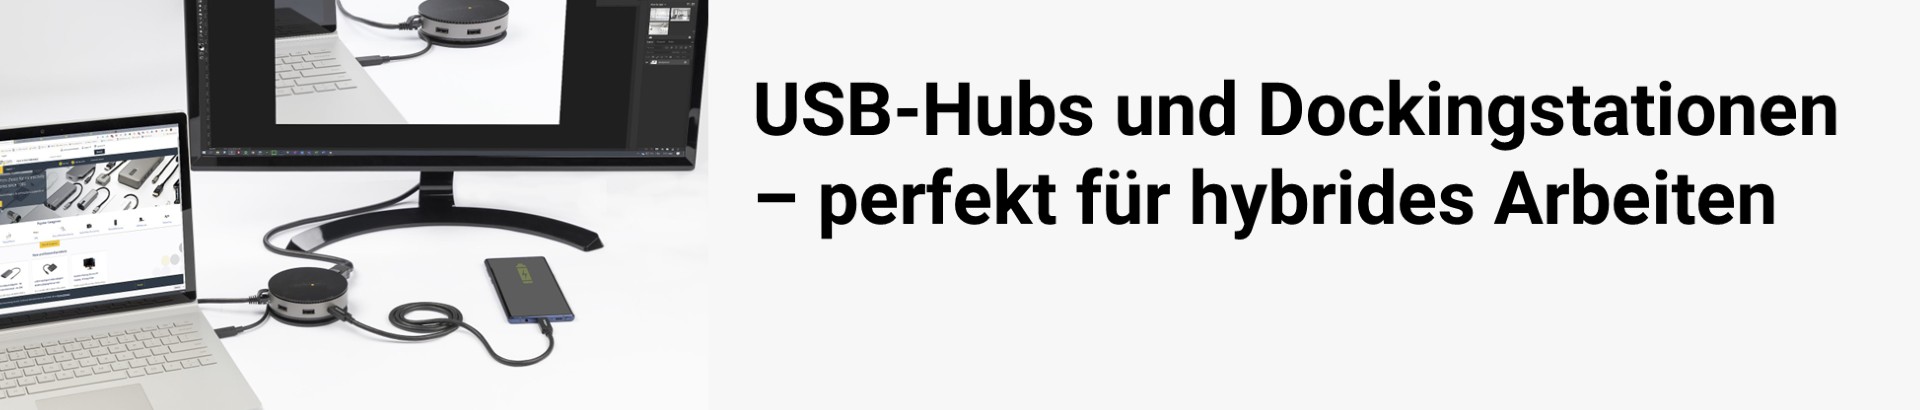 USB-Hubs und Dockingstationen